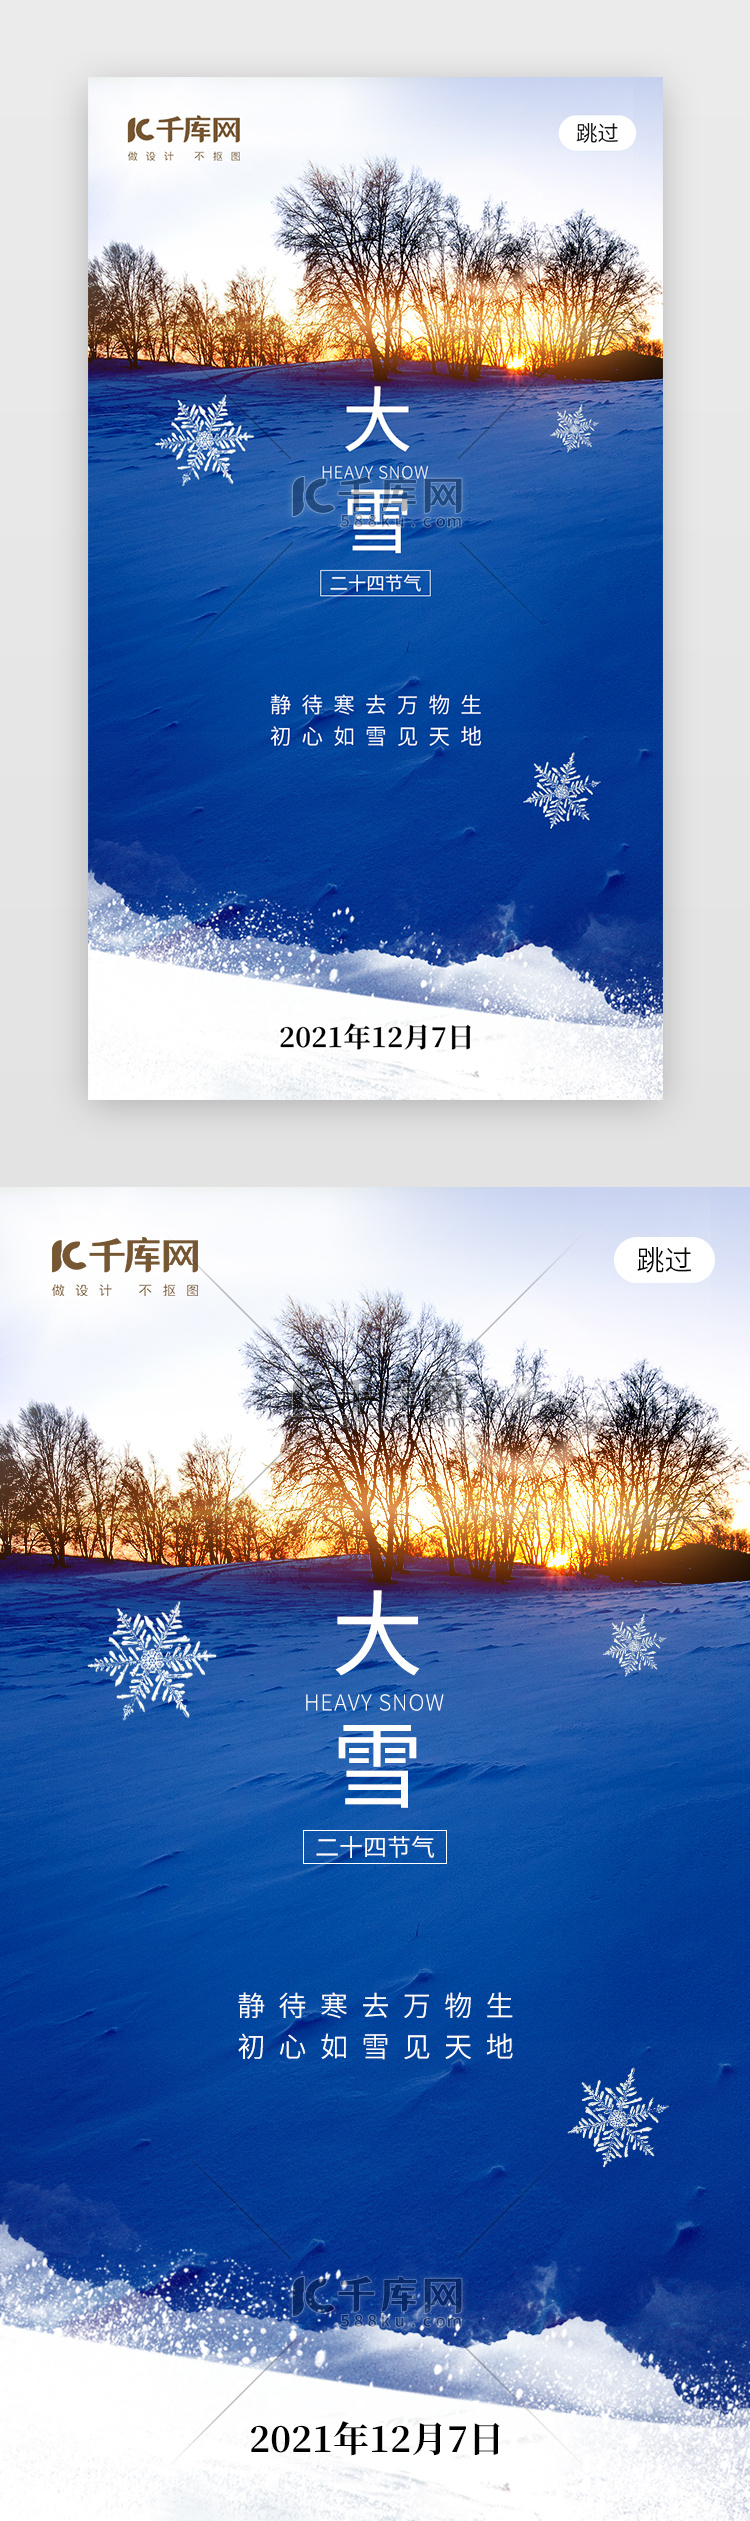 二十四节气大雪app闪屏创意蓝色积雪